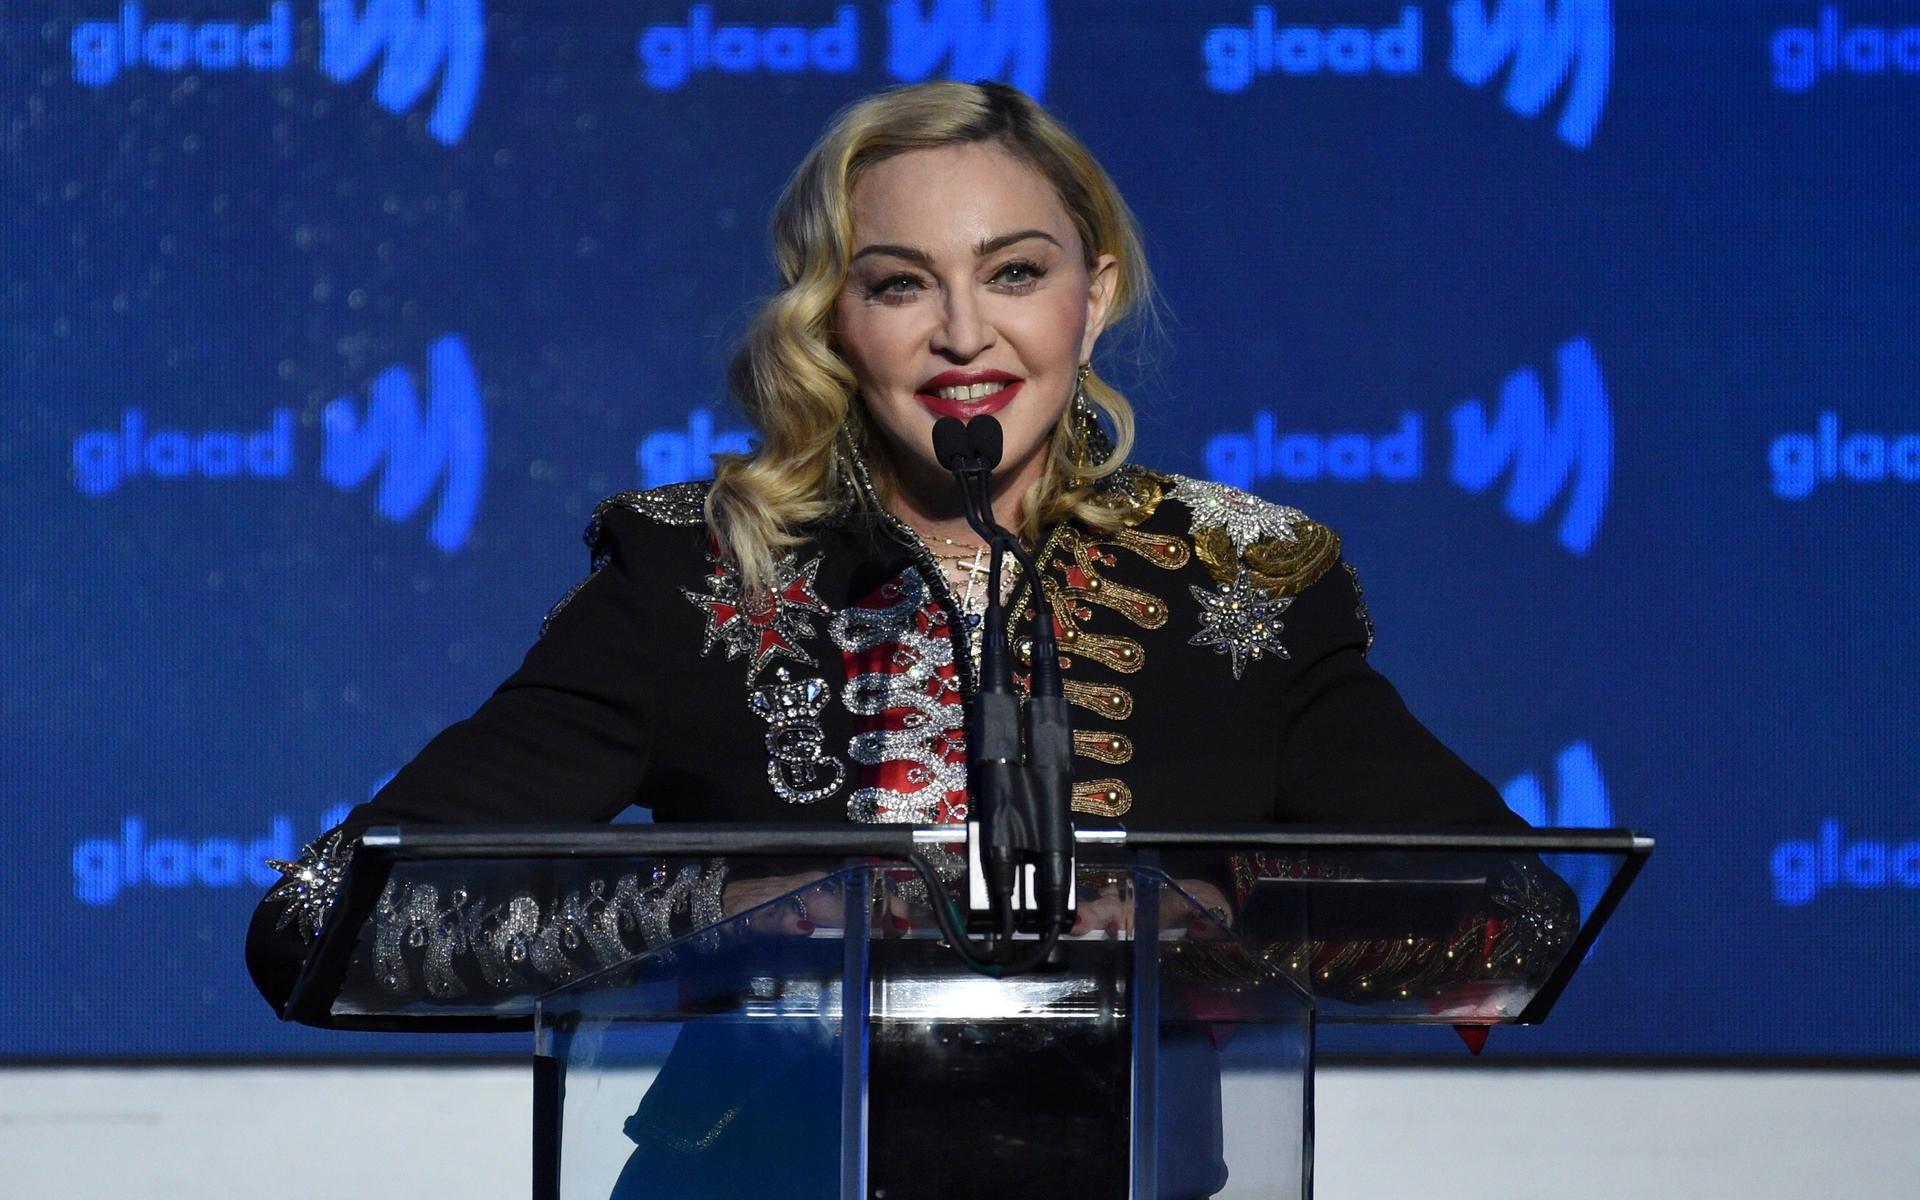 Madonnas välgjorda musikvideor har minst sagt cirkulerat flitigt på kanalen